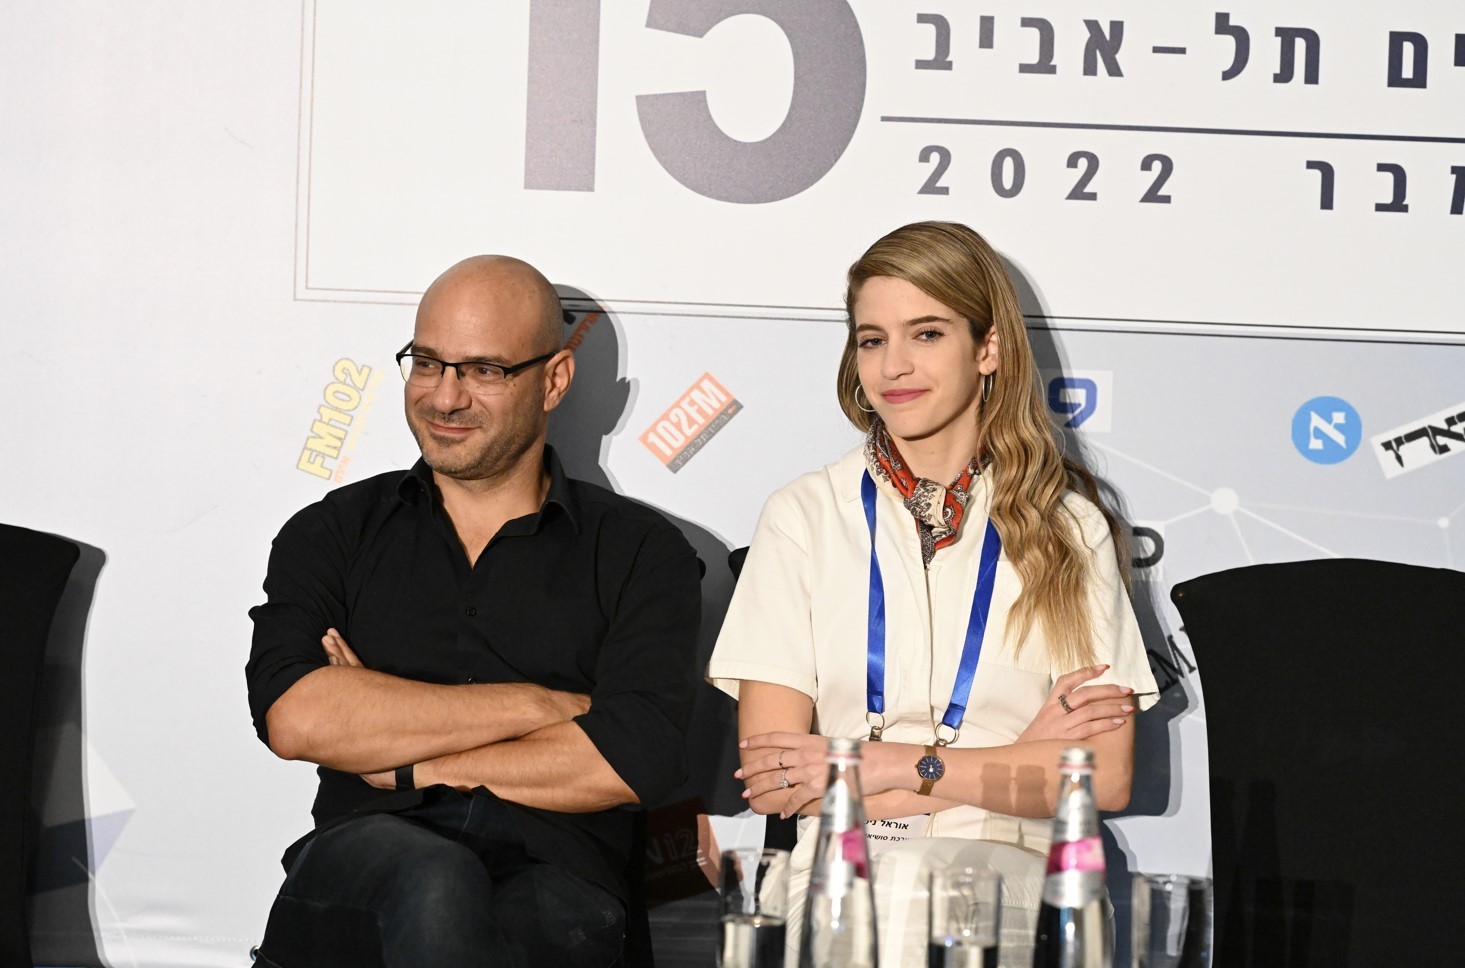 טוויטר דפקה את העיתונאים - כנס אילת ה-15 לעיתונות - אגודת העיתונאים בתל אביב